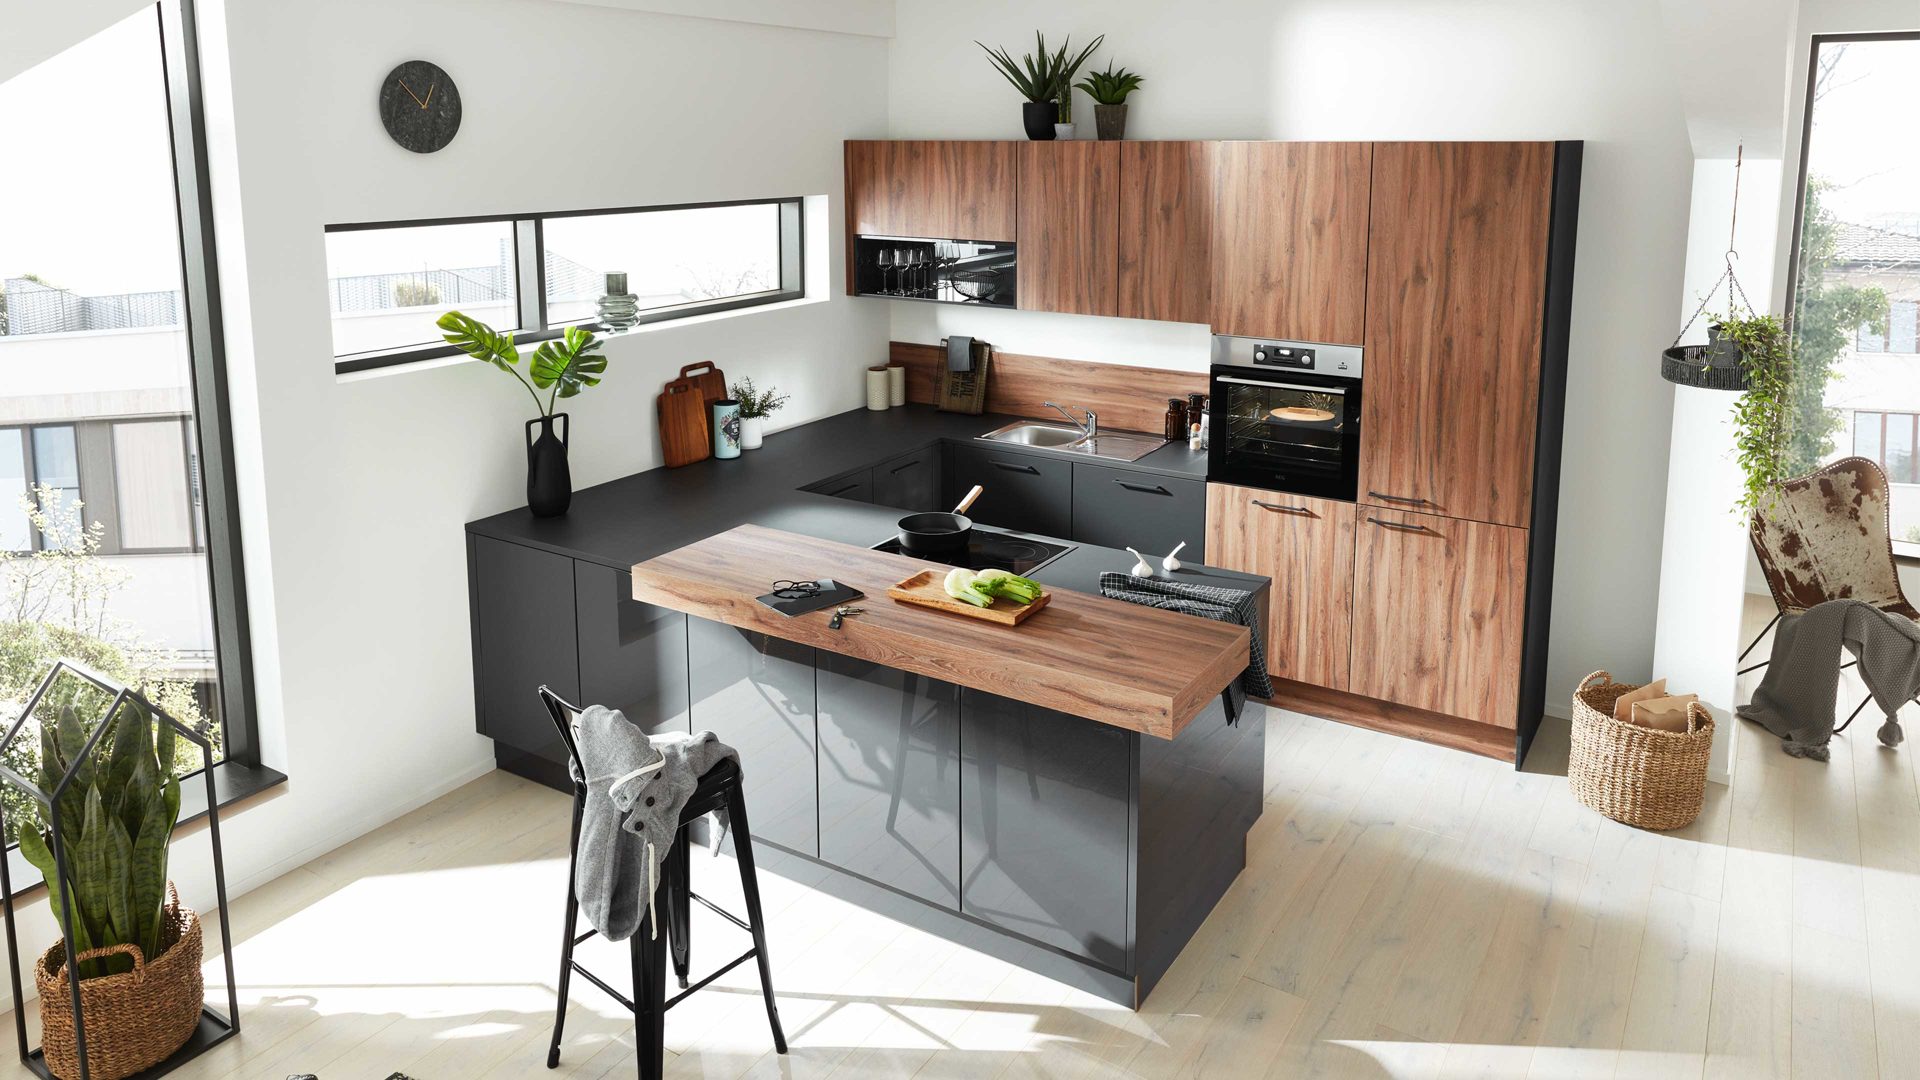 Einbauküche Interliving aus Holz in Holzfarben Interliving Küche Serie 3046 mit AEG Einbaugeräten Sierra Eiche & Graphit - Stellfläche ca. 280 x 315 cm